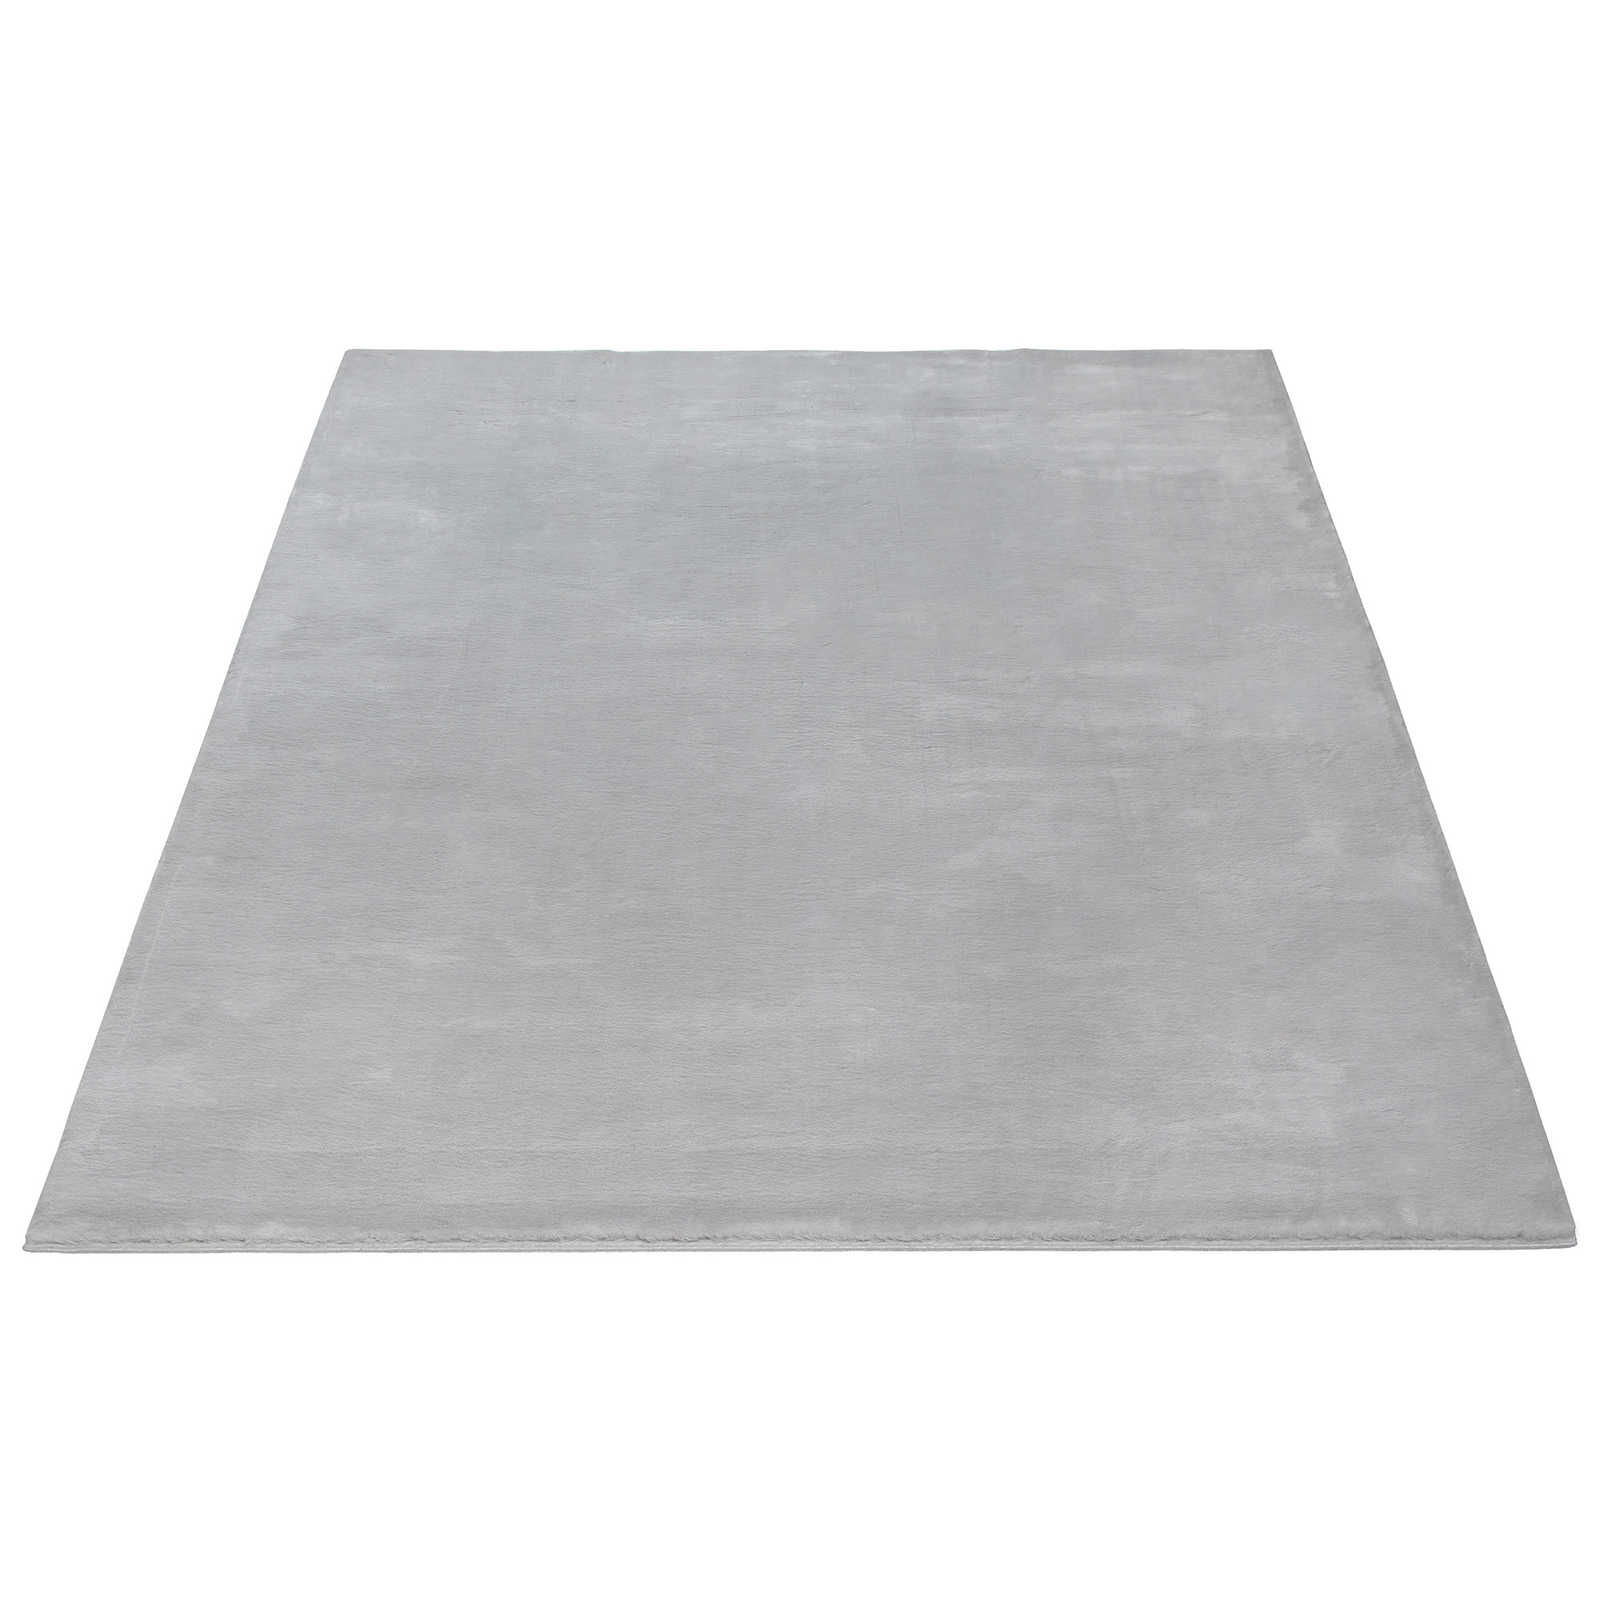 Accogliente tappeto a pelo alto in morbido grigio - 290 x 200 cm
